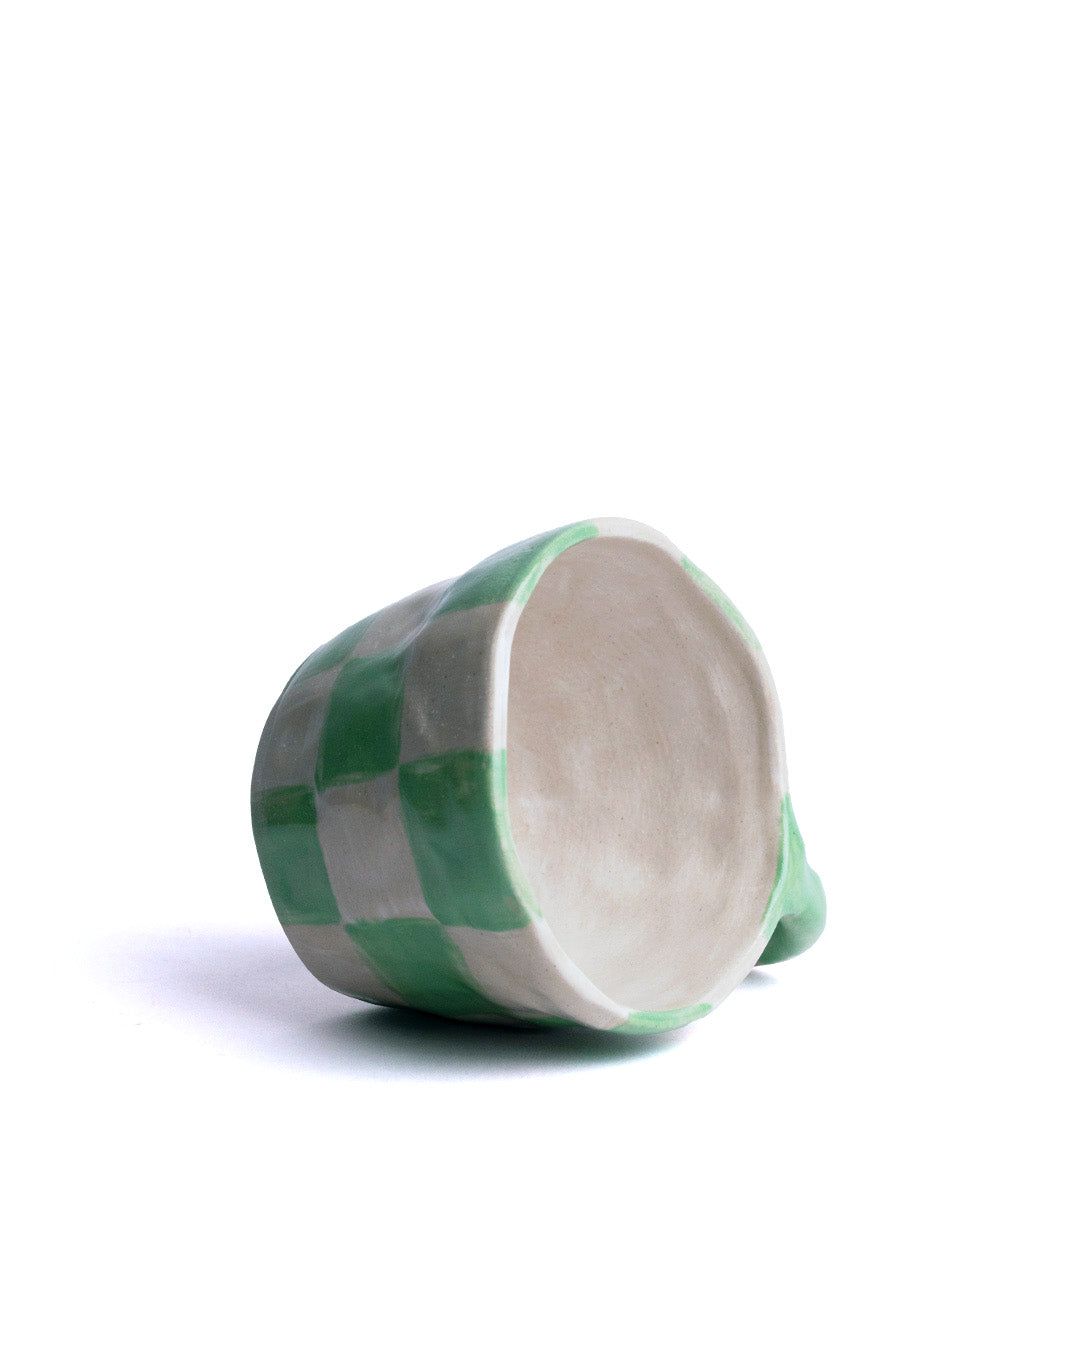 Daily dose ceramics Checkers Mug